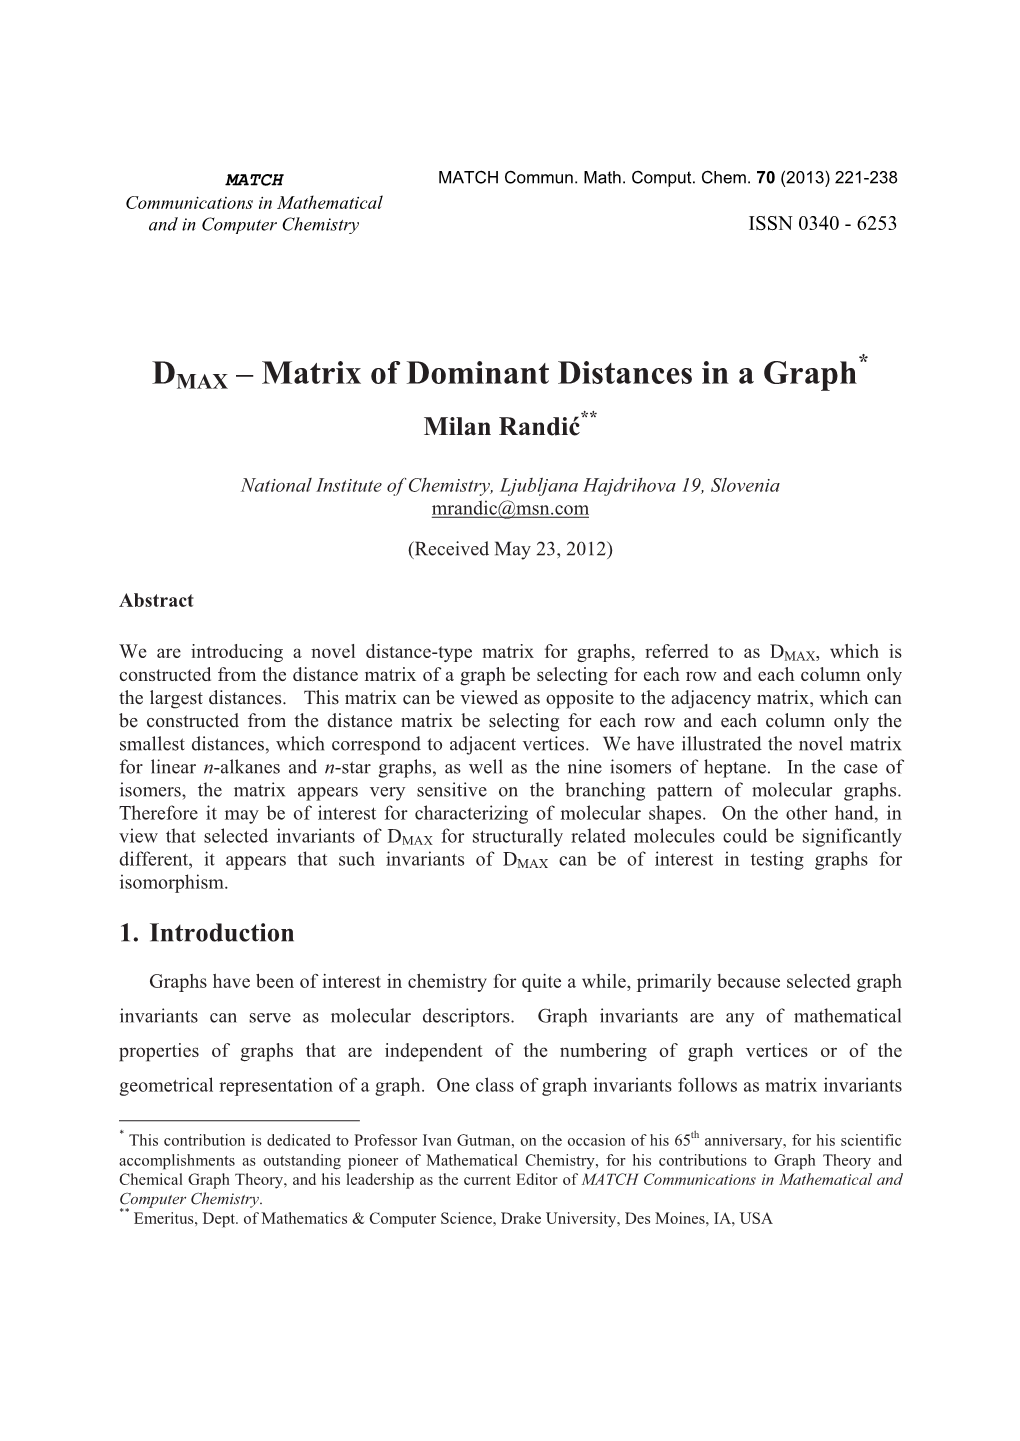 DMAX – Matrix of Dominant Distances in a Graph ** Milan Randi